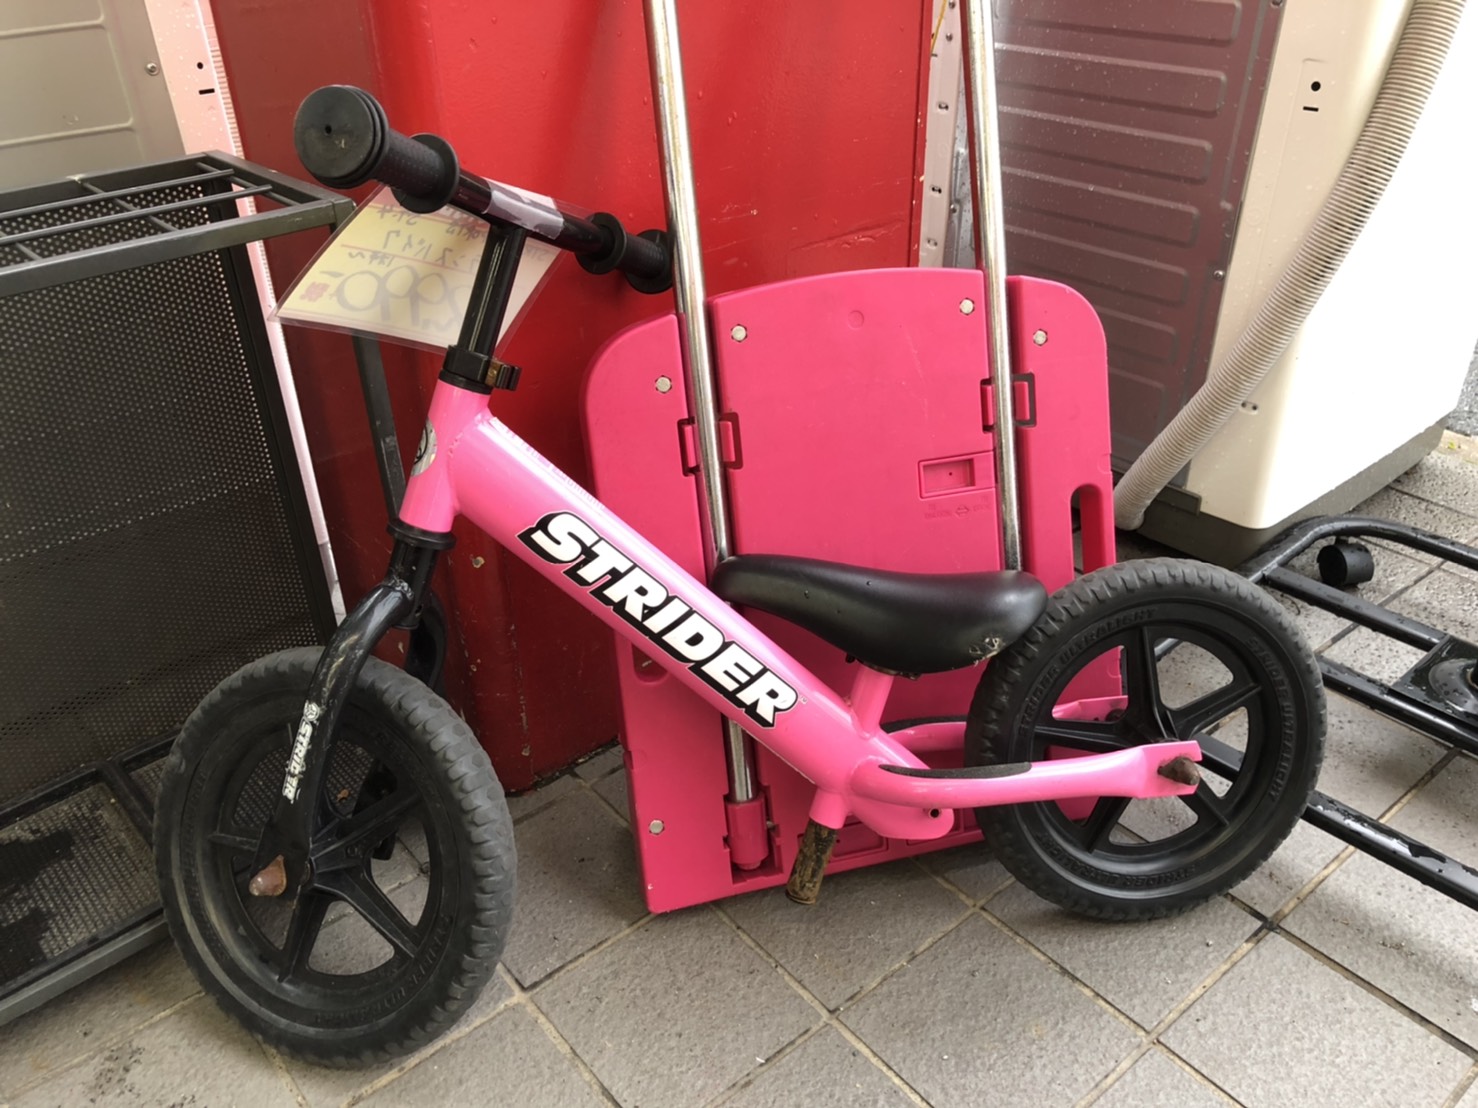 ストライダー スポーツモデル ピンク - 自転車本体